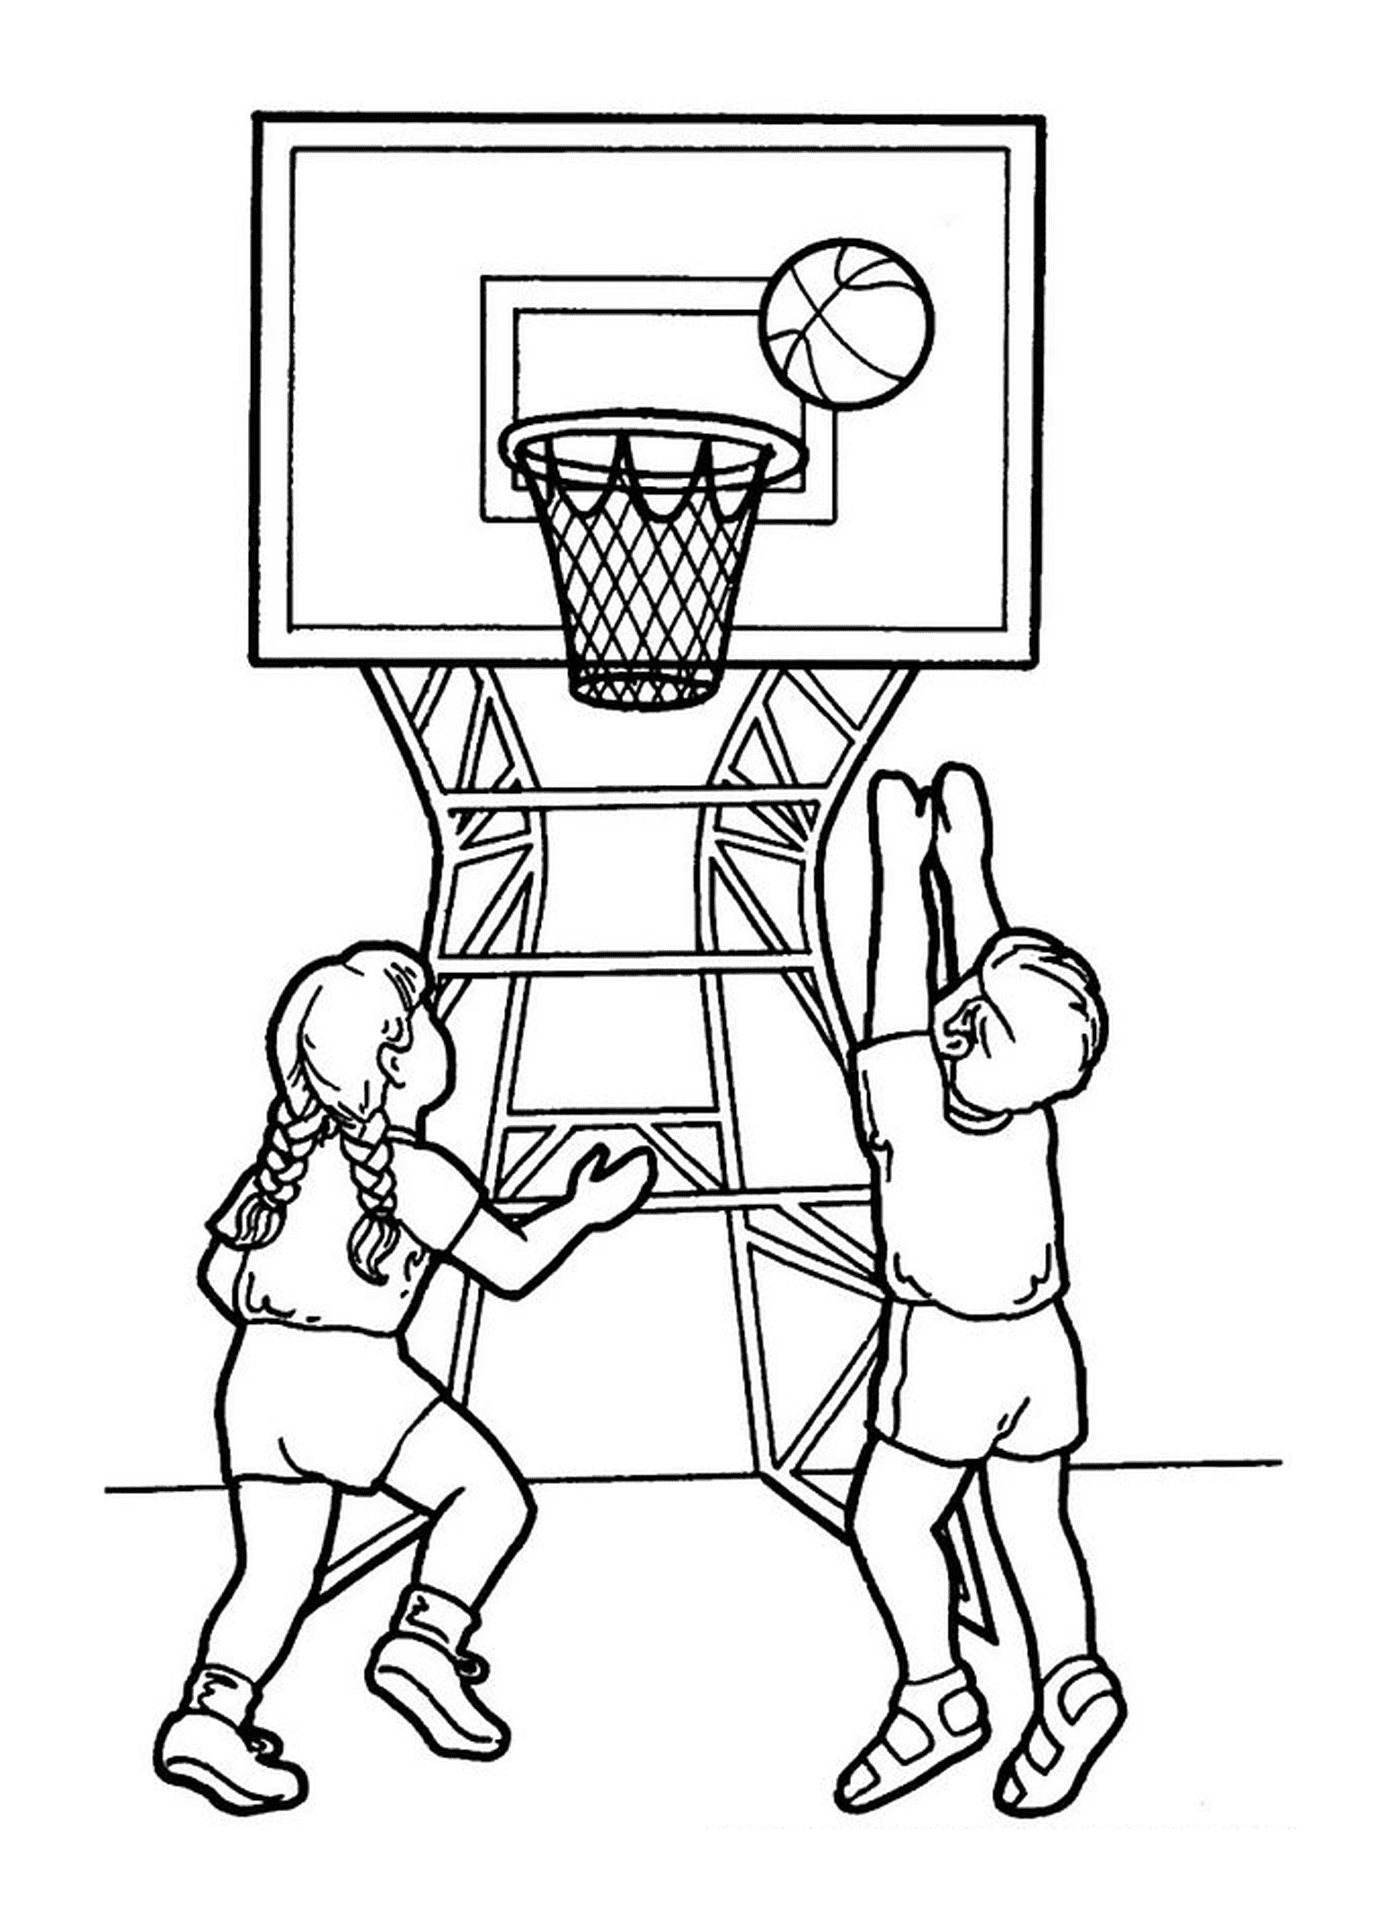   Un garçon et une fille jouent au basketball 